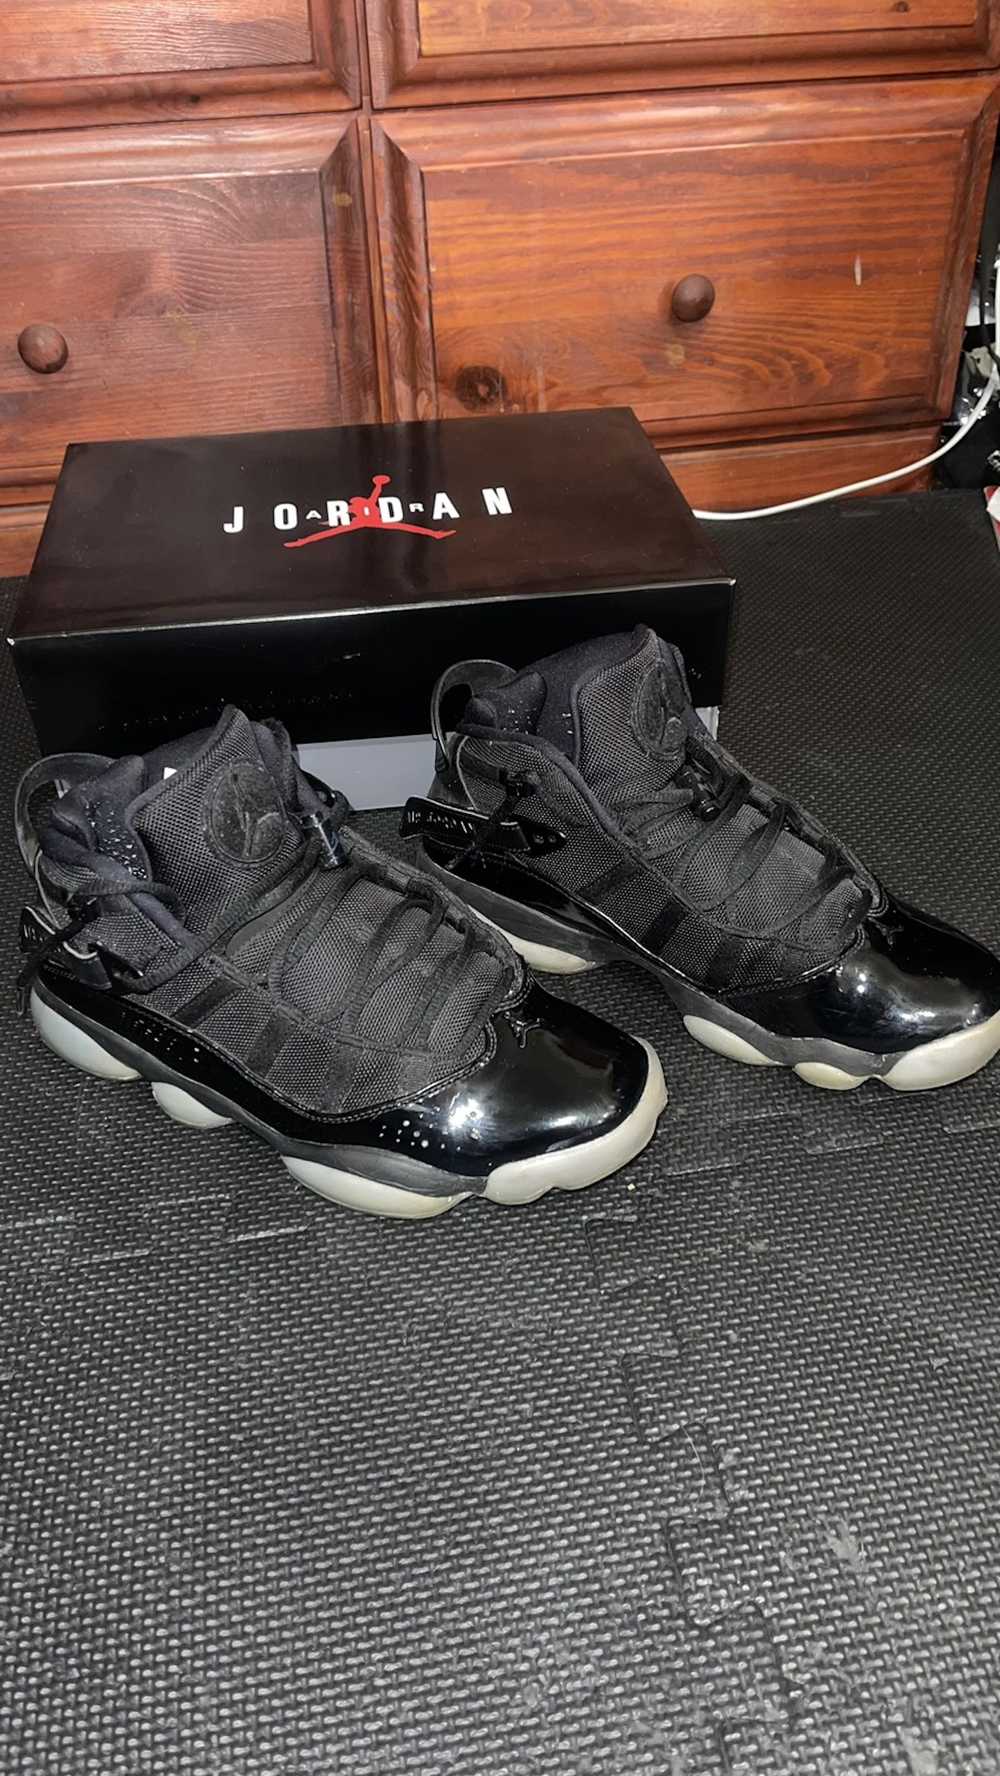 Jordan Brand × Nike Jordan 6 Rings - image 4